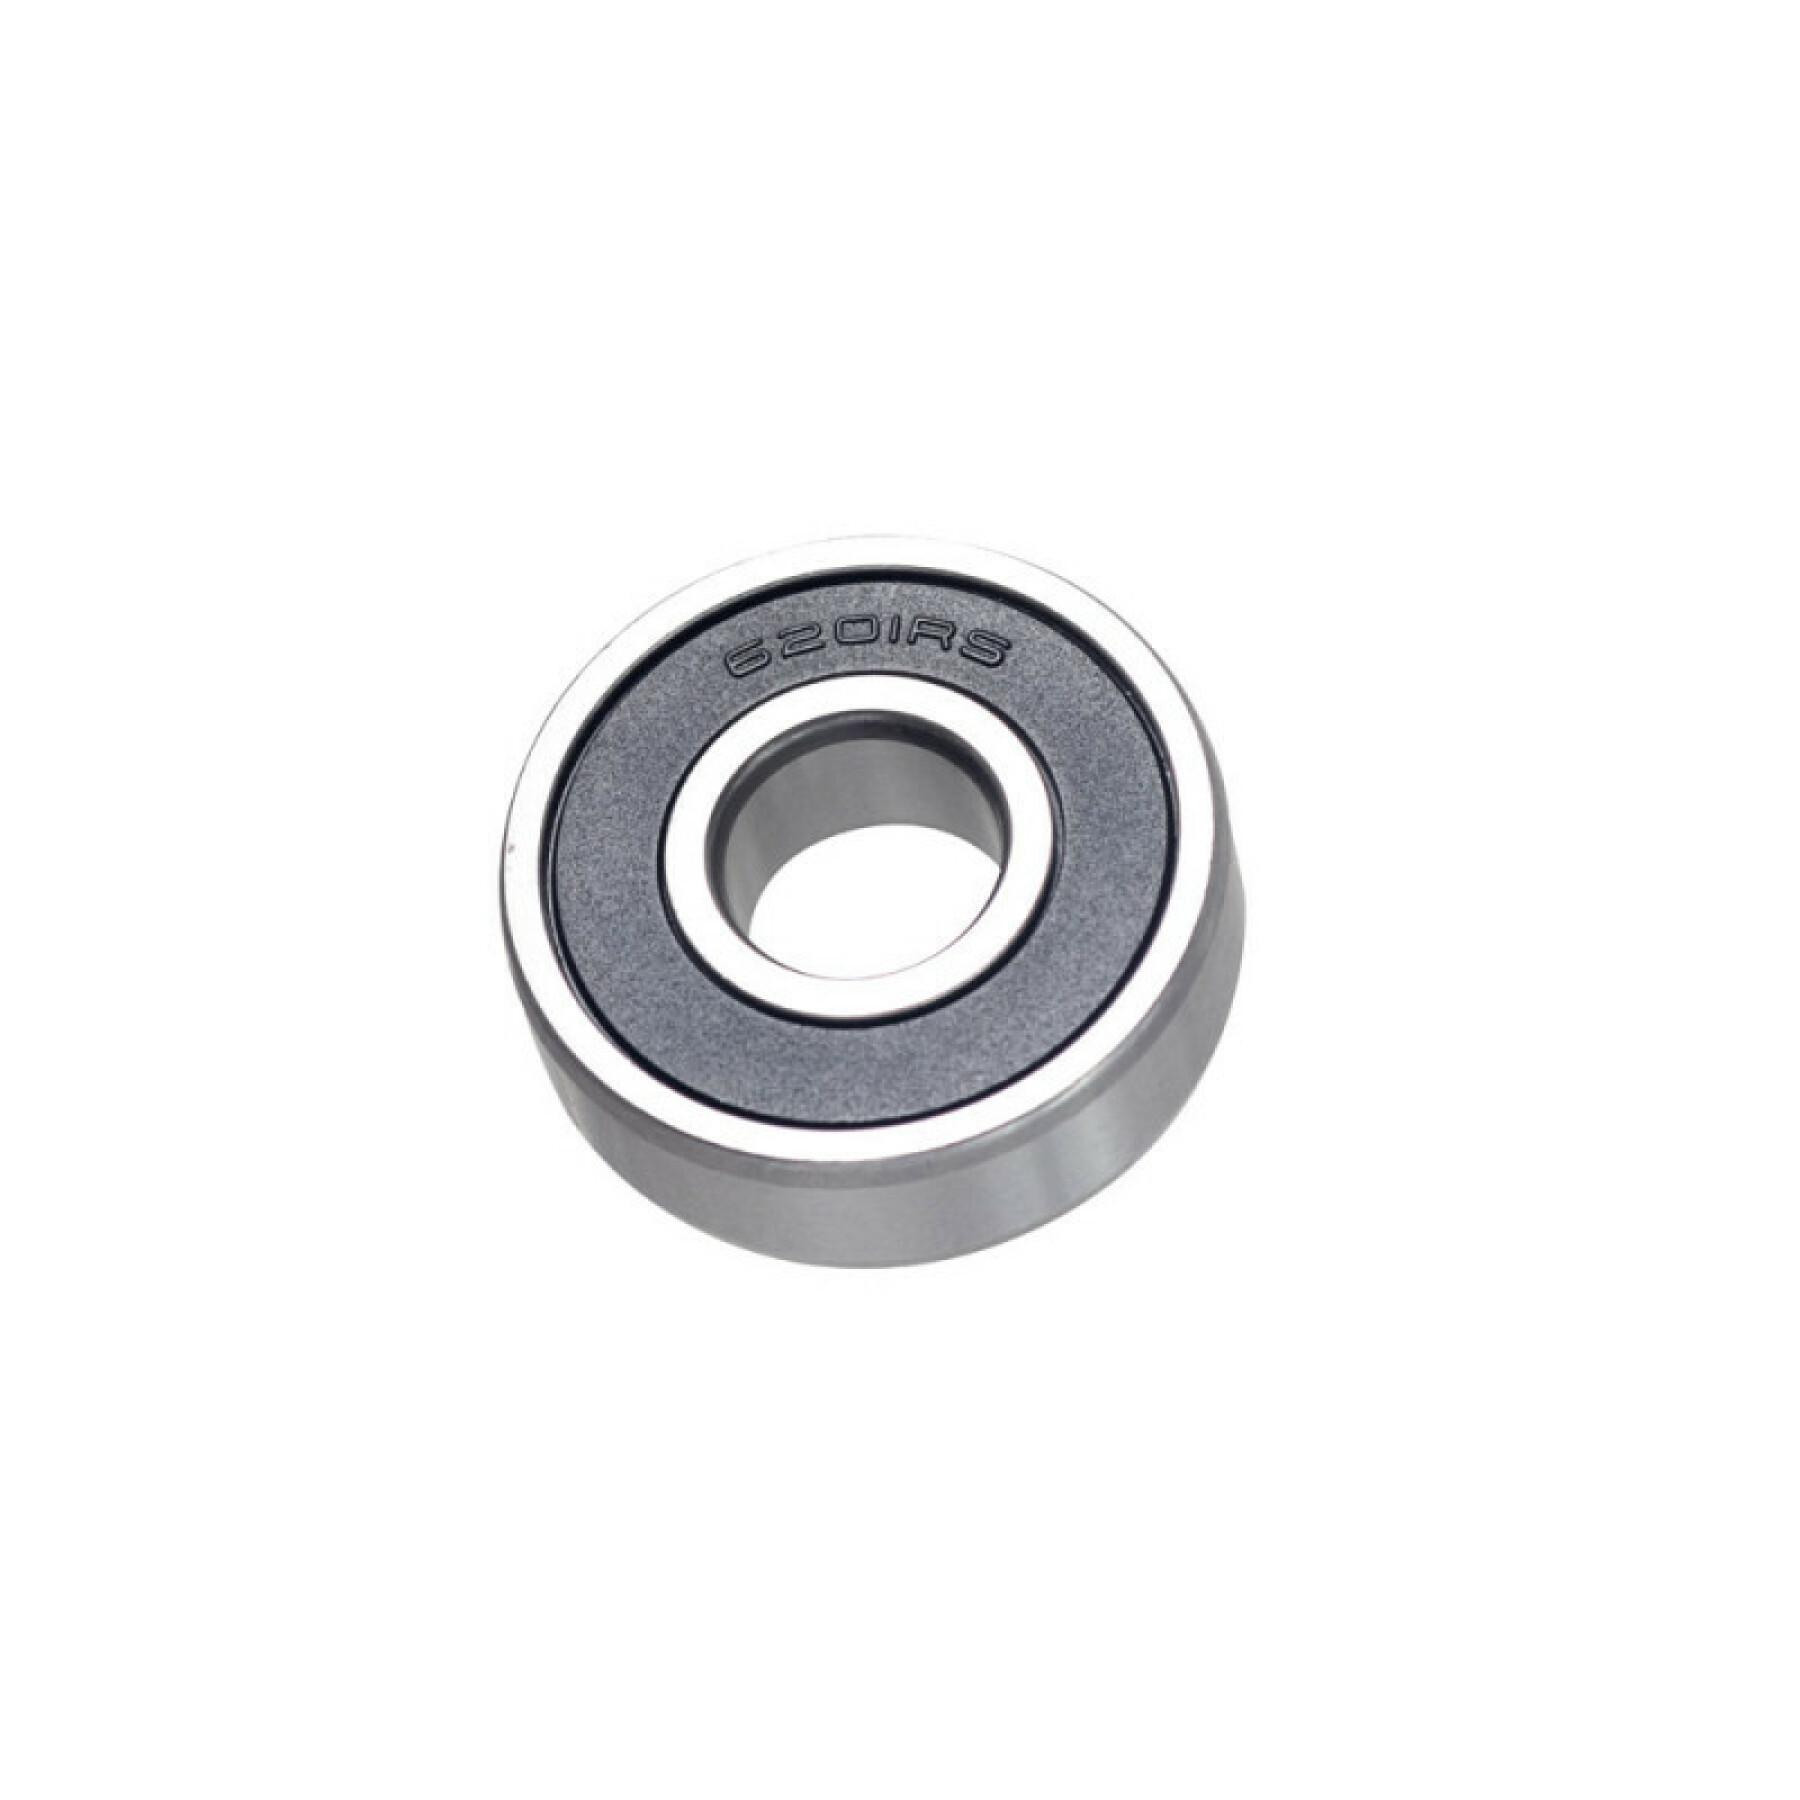 Cartridge bearing Marwi CB-078 6201 2RS